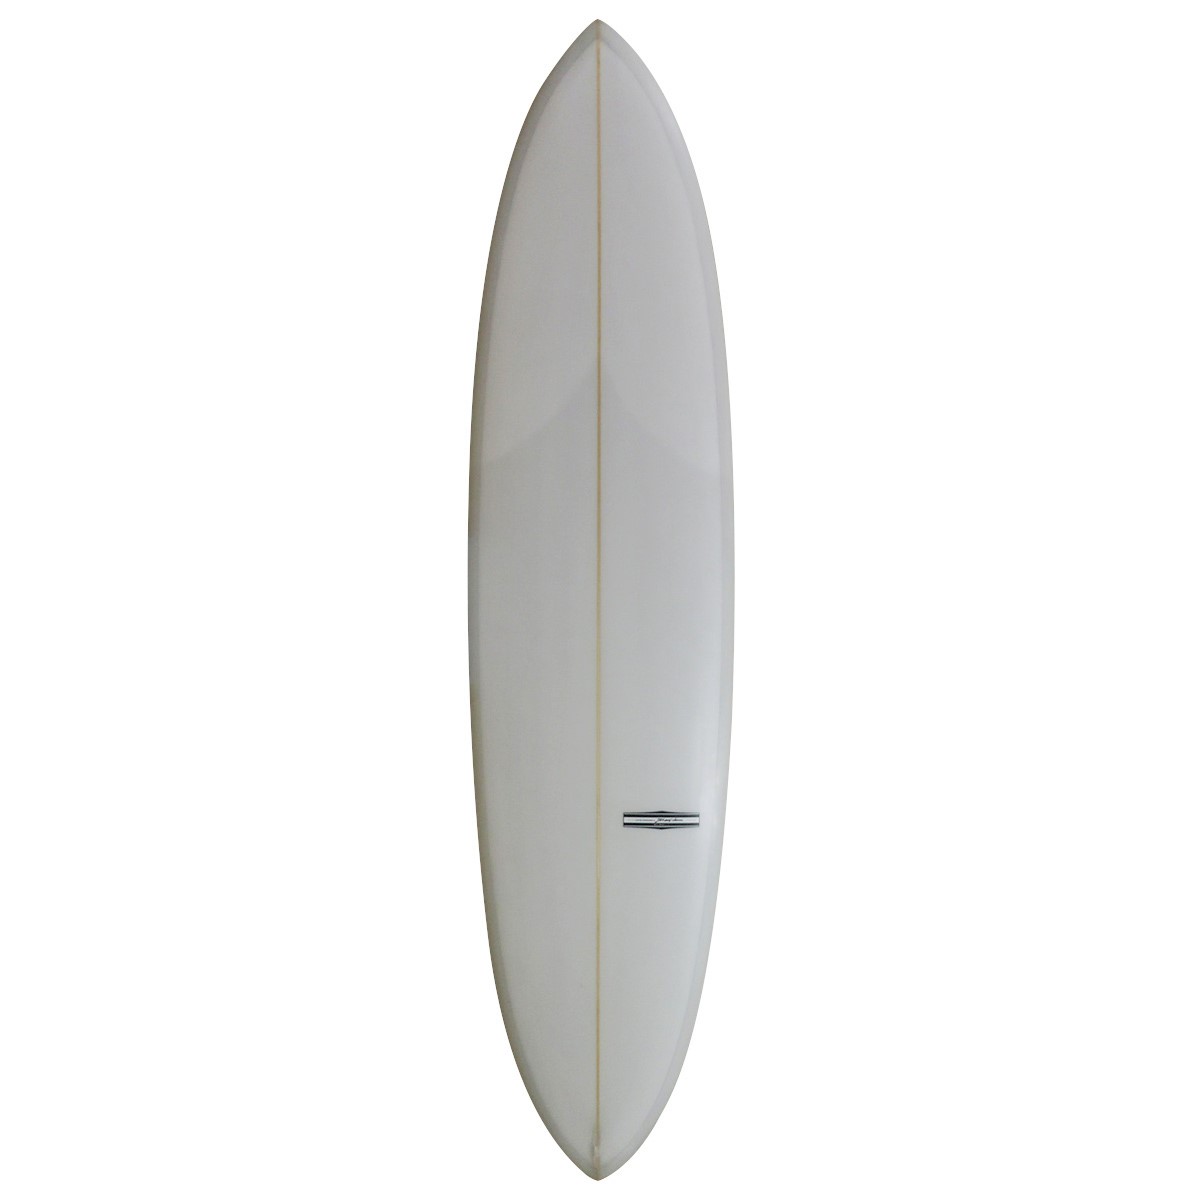 YU SURF CLASSIC / LEAFY 7`4 Shaped by RU